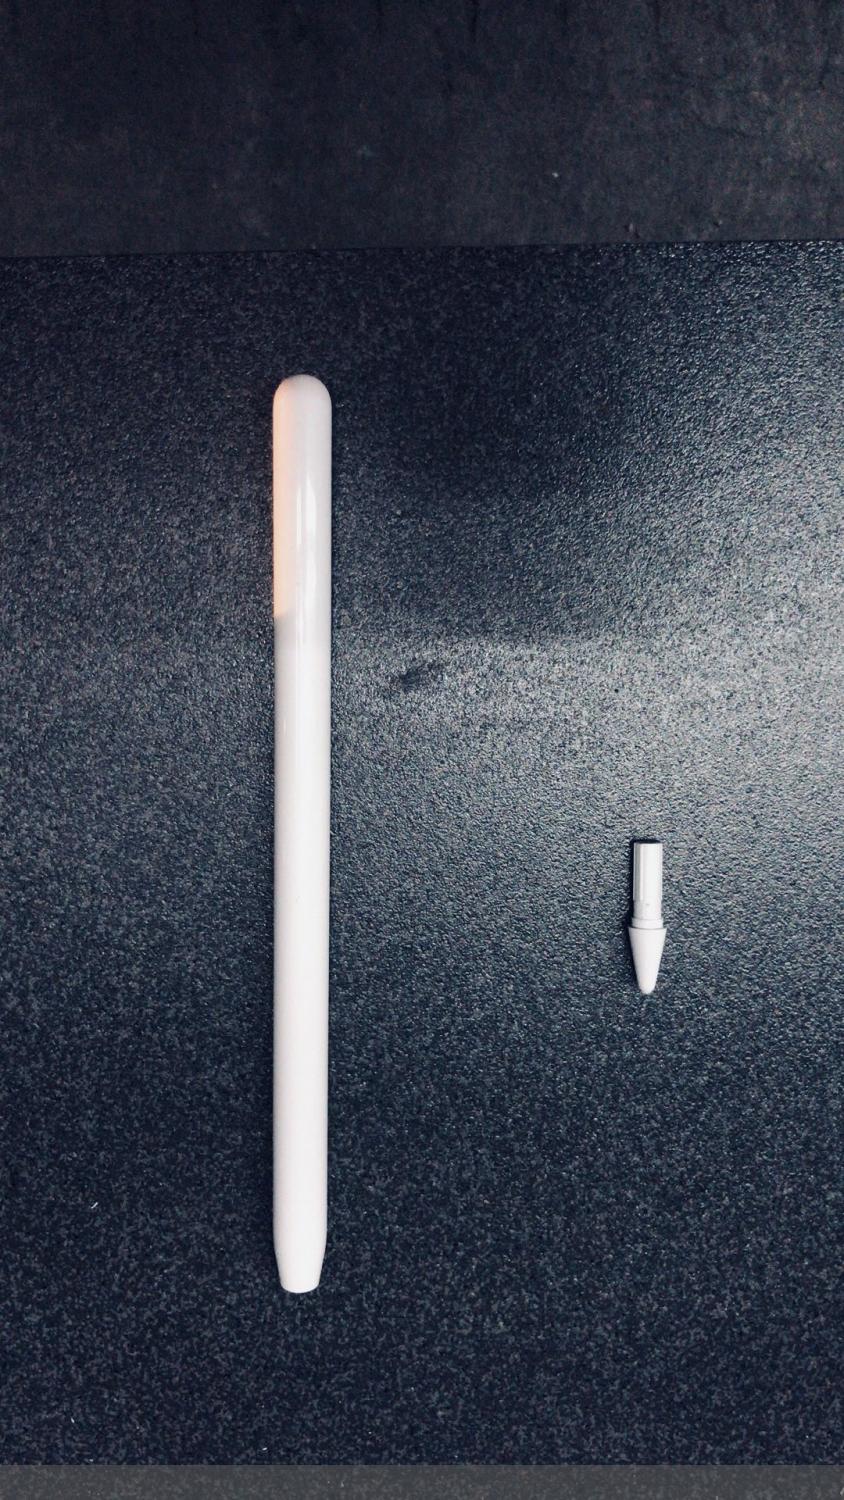 Apple Pencil 3 erscheint gemeinsam mit iPad Pro 2021